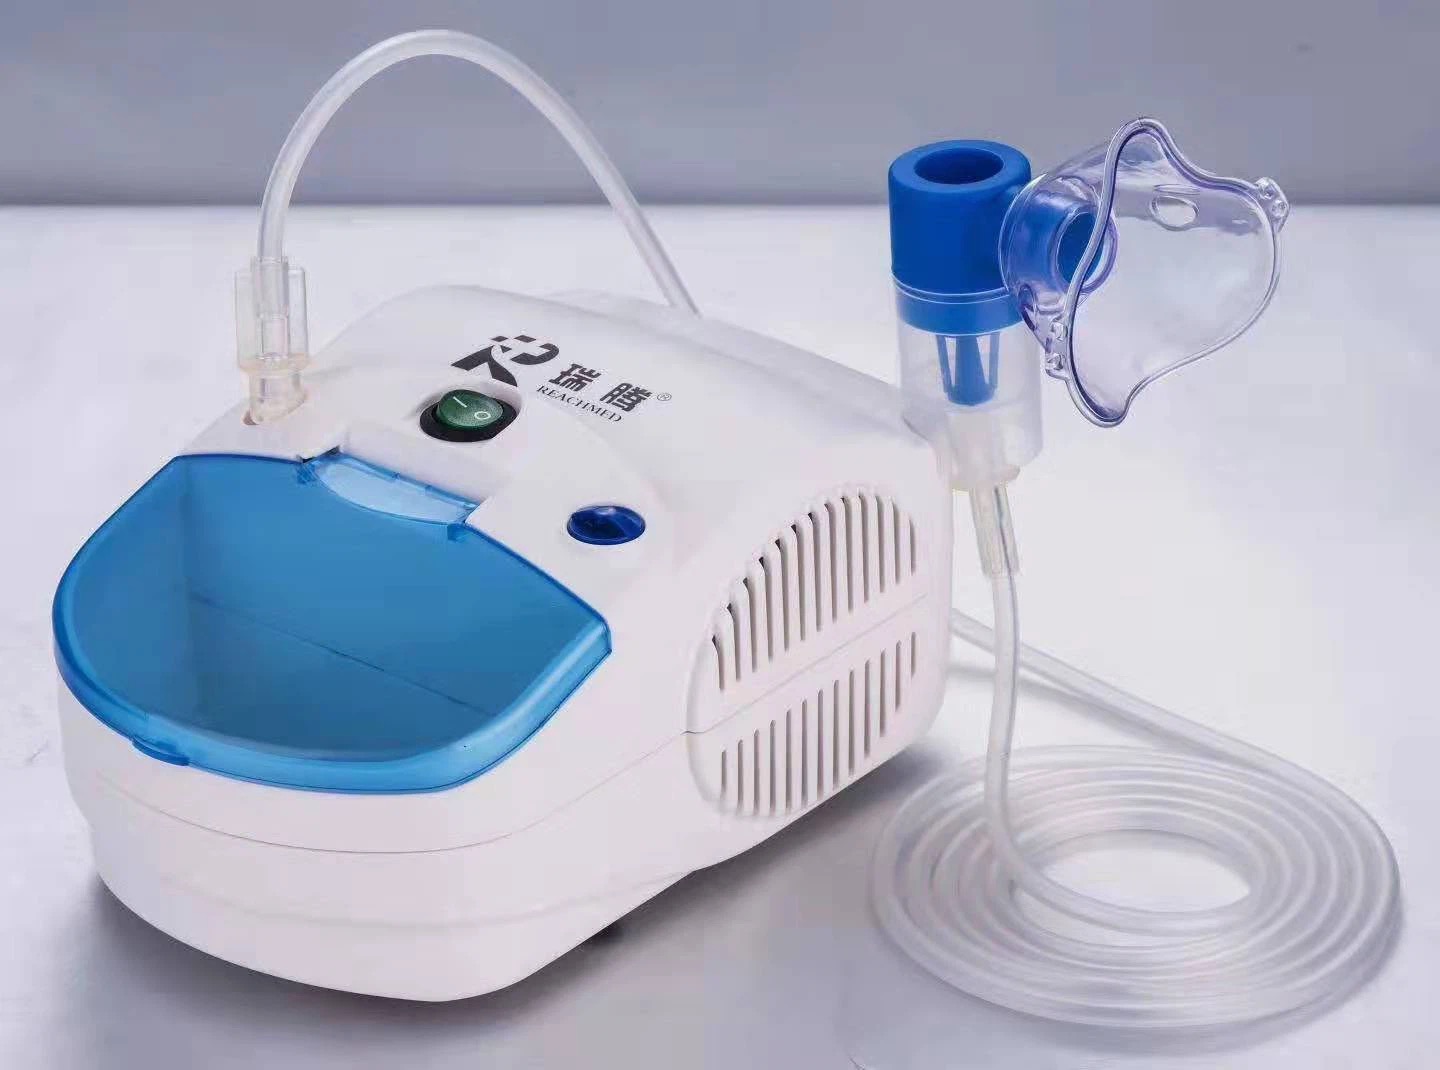 Medical Compressor Nebulizer For Adult/Child At Household Appliance